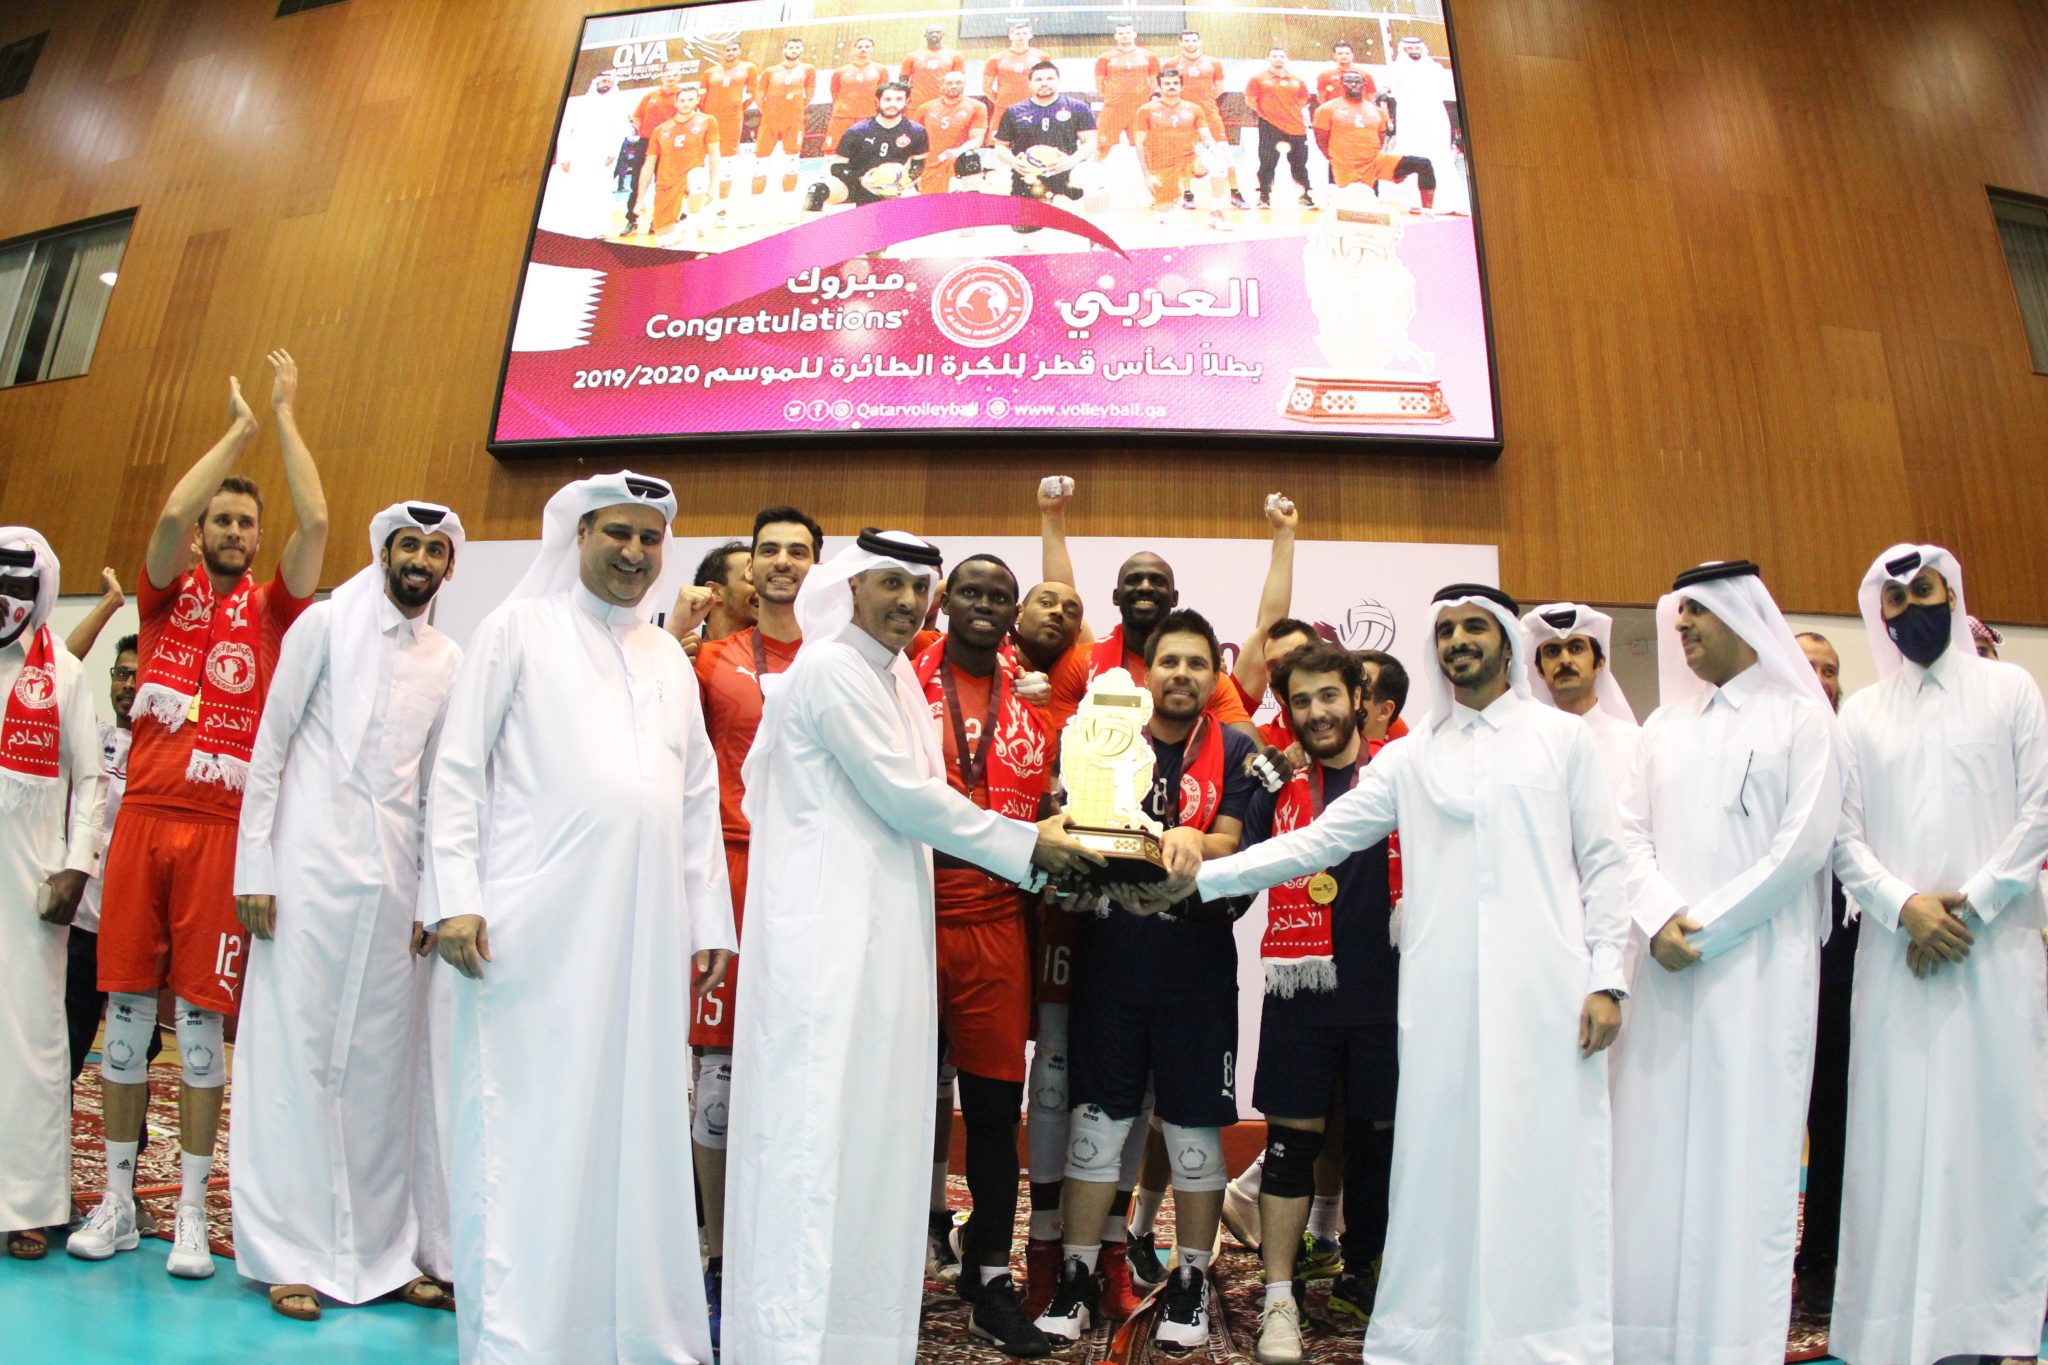 تتويج فريق العربي بلقب بطولة كأس قطر للكرة الطائرة